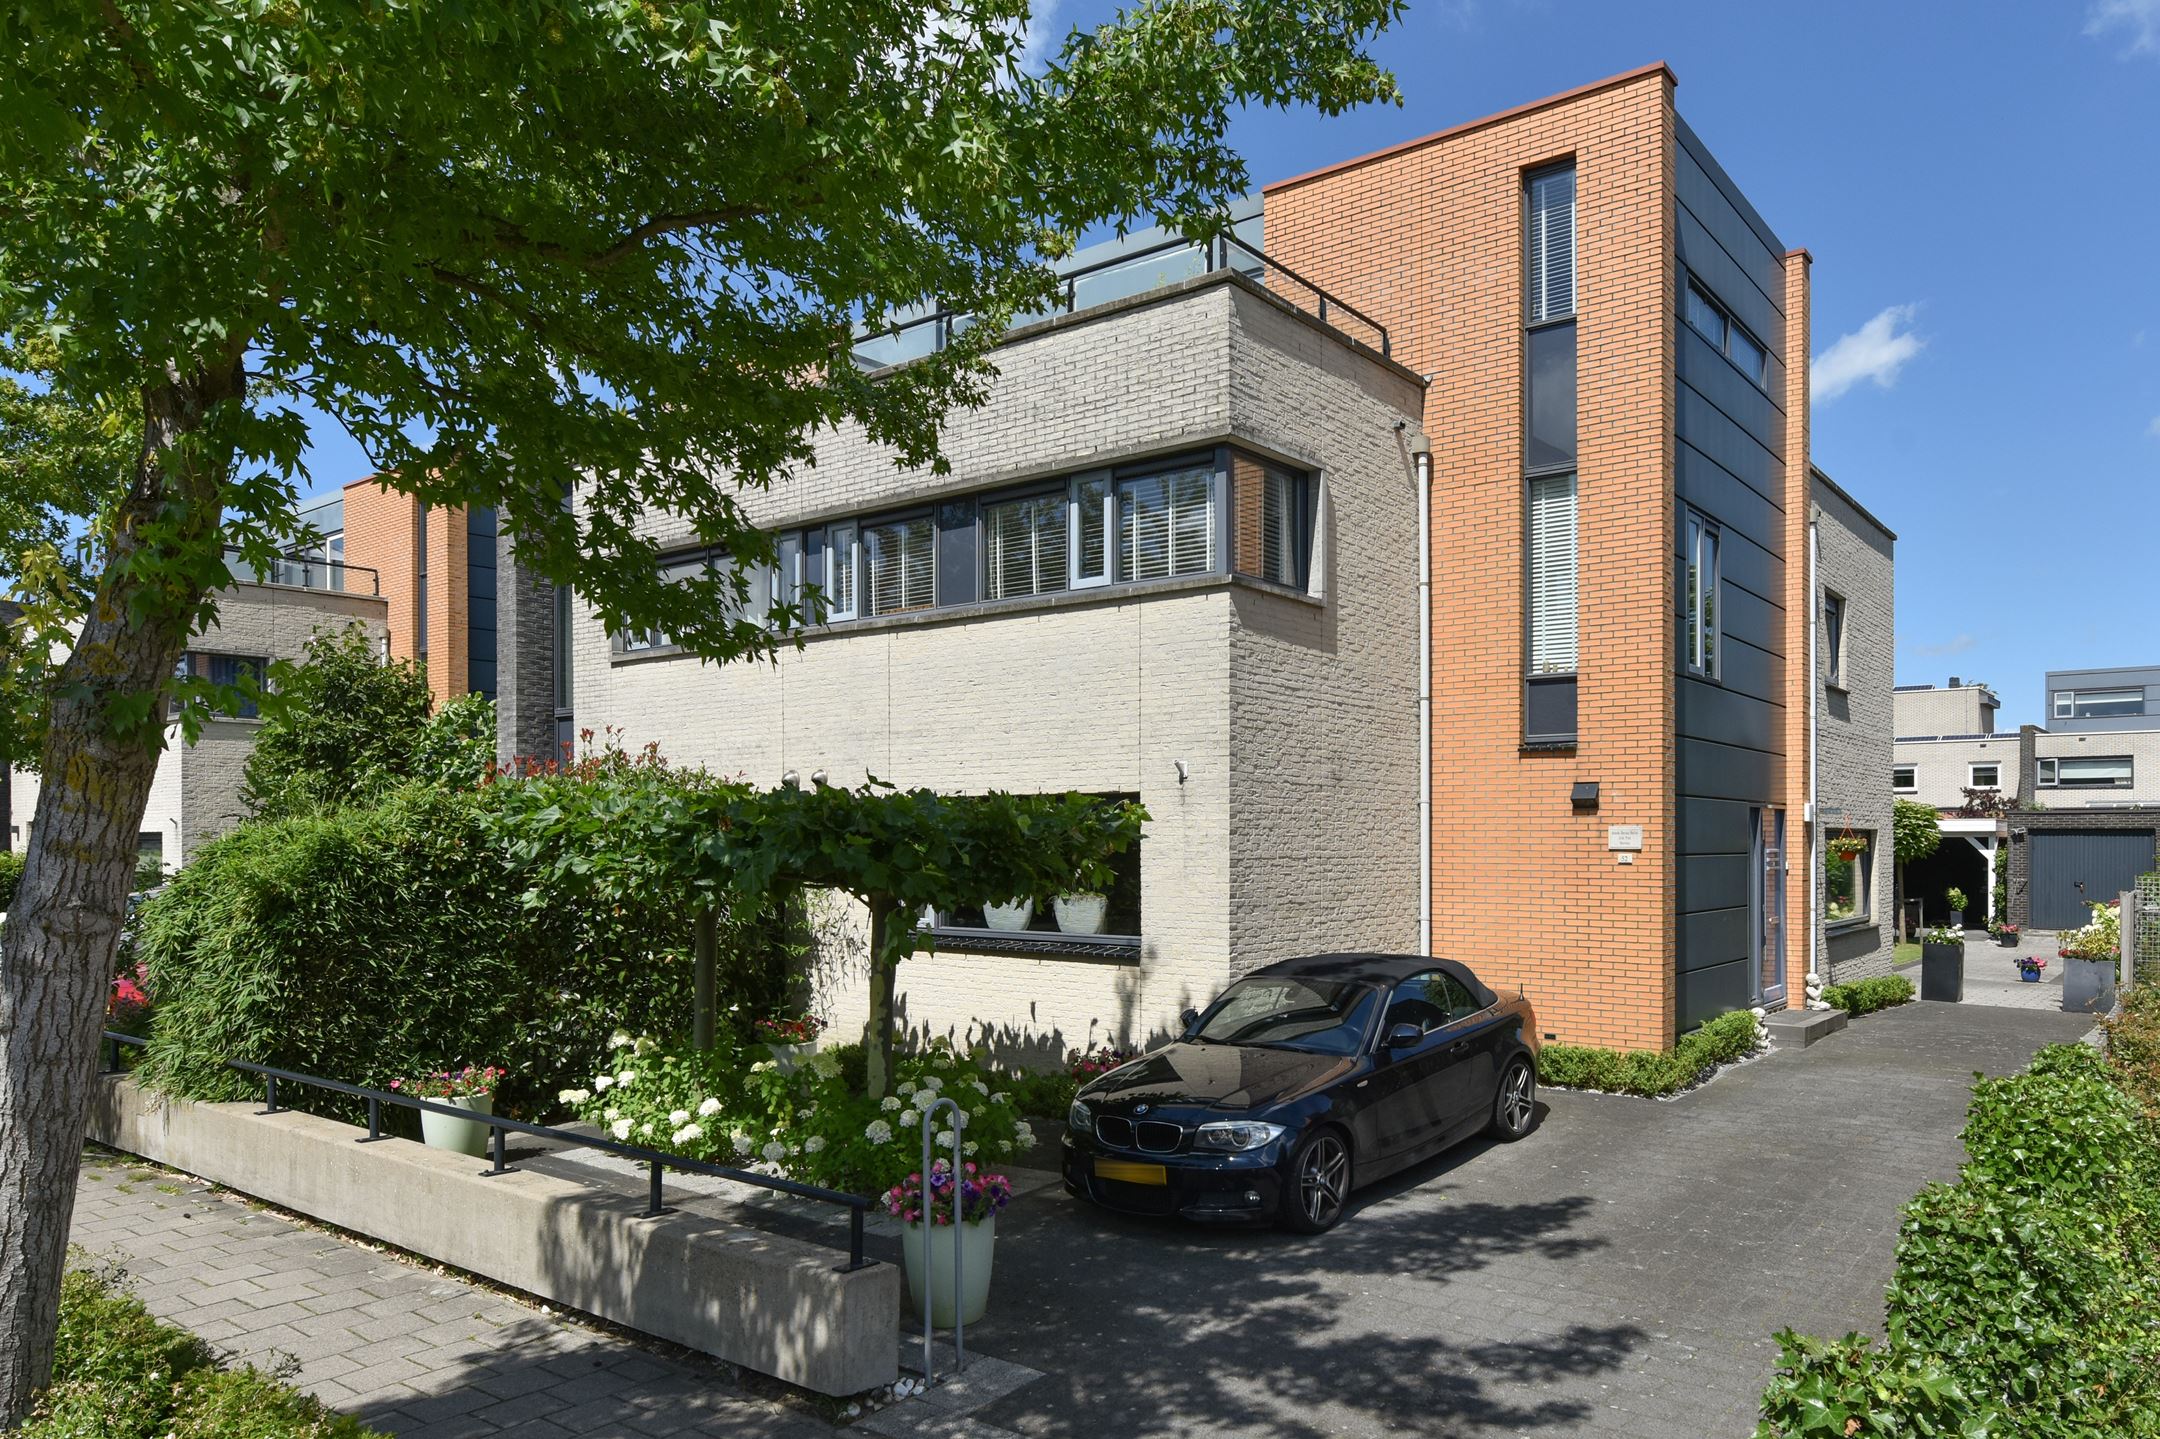 Deze riante en fraai afgewerkte 2-onder-1 kap woning Villa Linea is gelegen in de ruim opgezette wijk “Burggooi”, deelgebied “Modern” in Alphen a/d Rijn